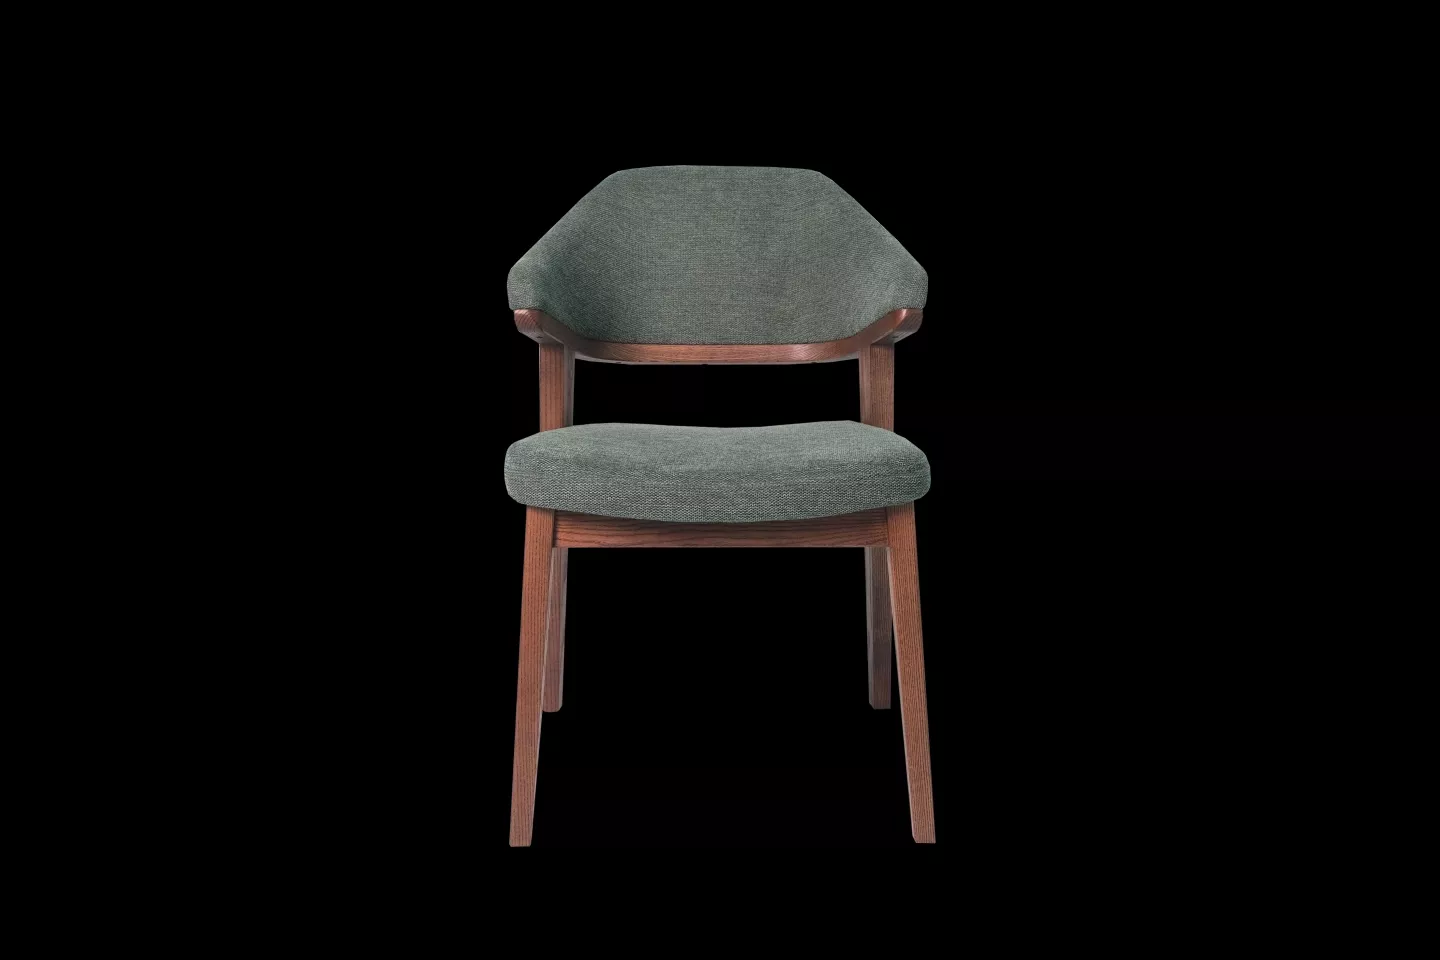 比利時亞麻布訂製餐椅實際拍攝照片,綠色椅面